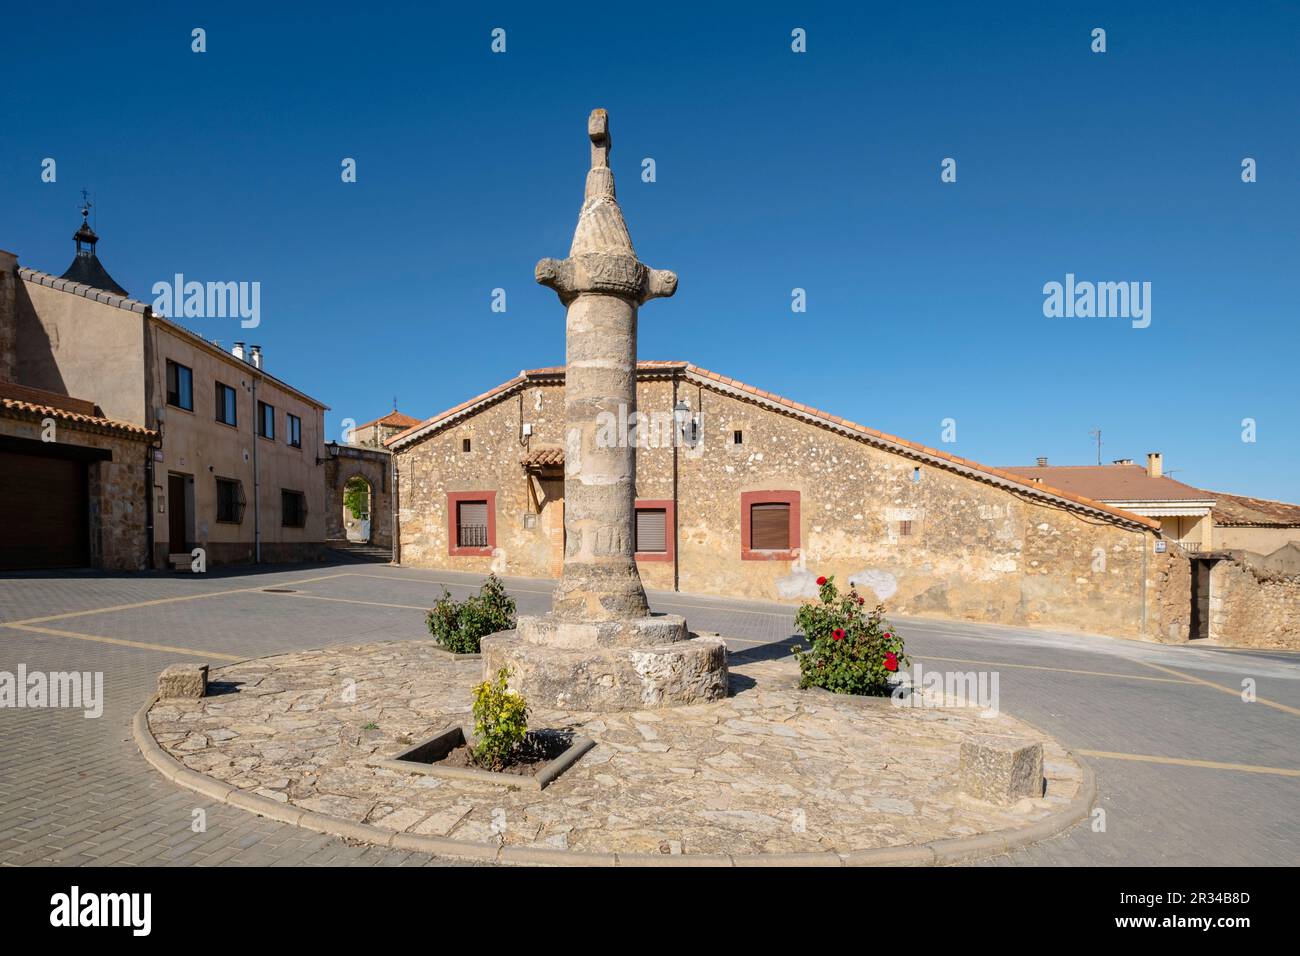 Picota, Barca, Soria, comunidad autónoma de Castilla y León, Spain, Europe. Stock Photo